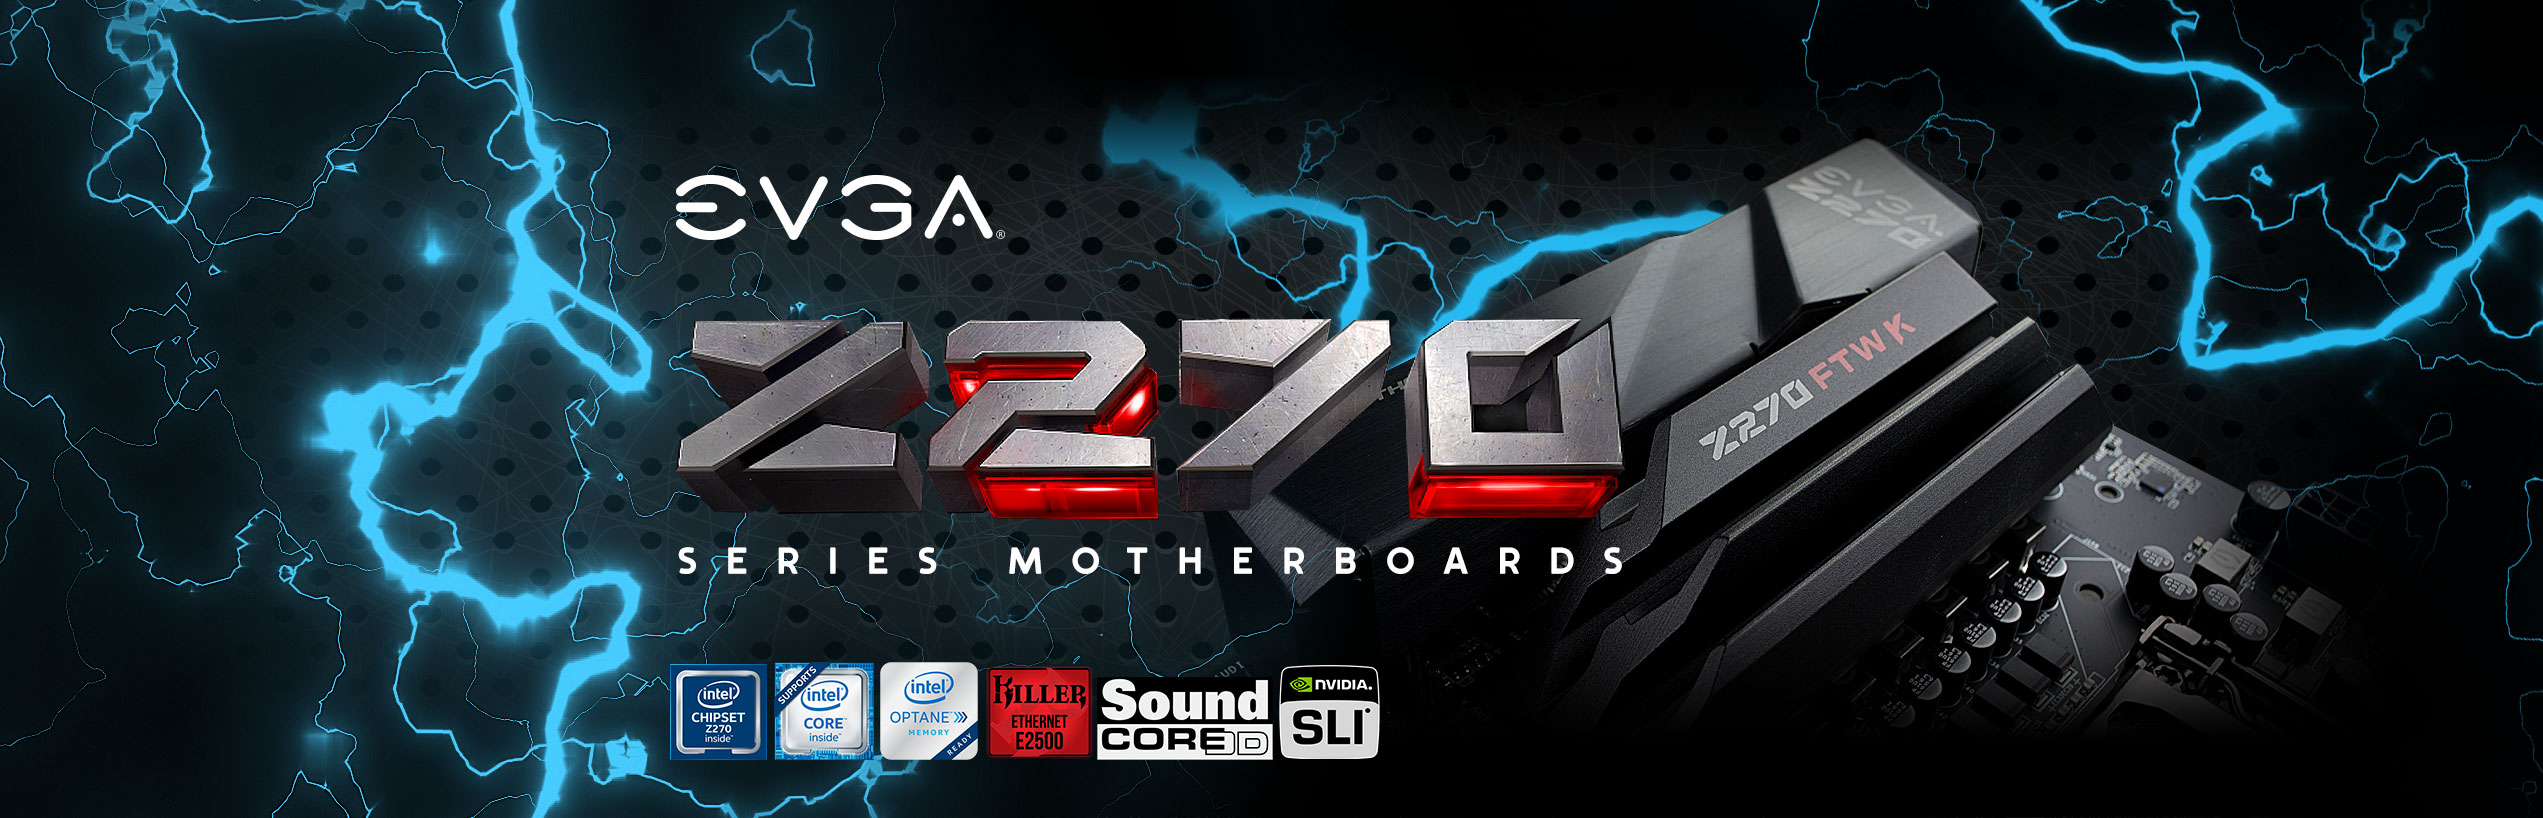 EVGA Z270 Series Motherboards